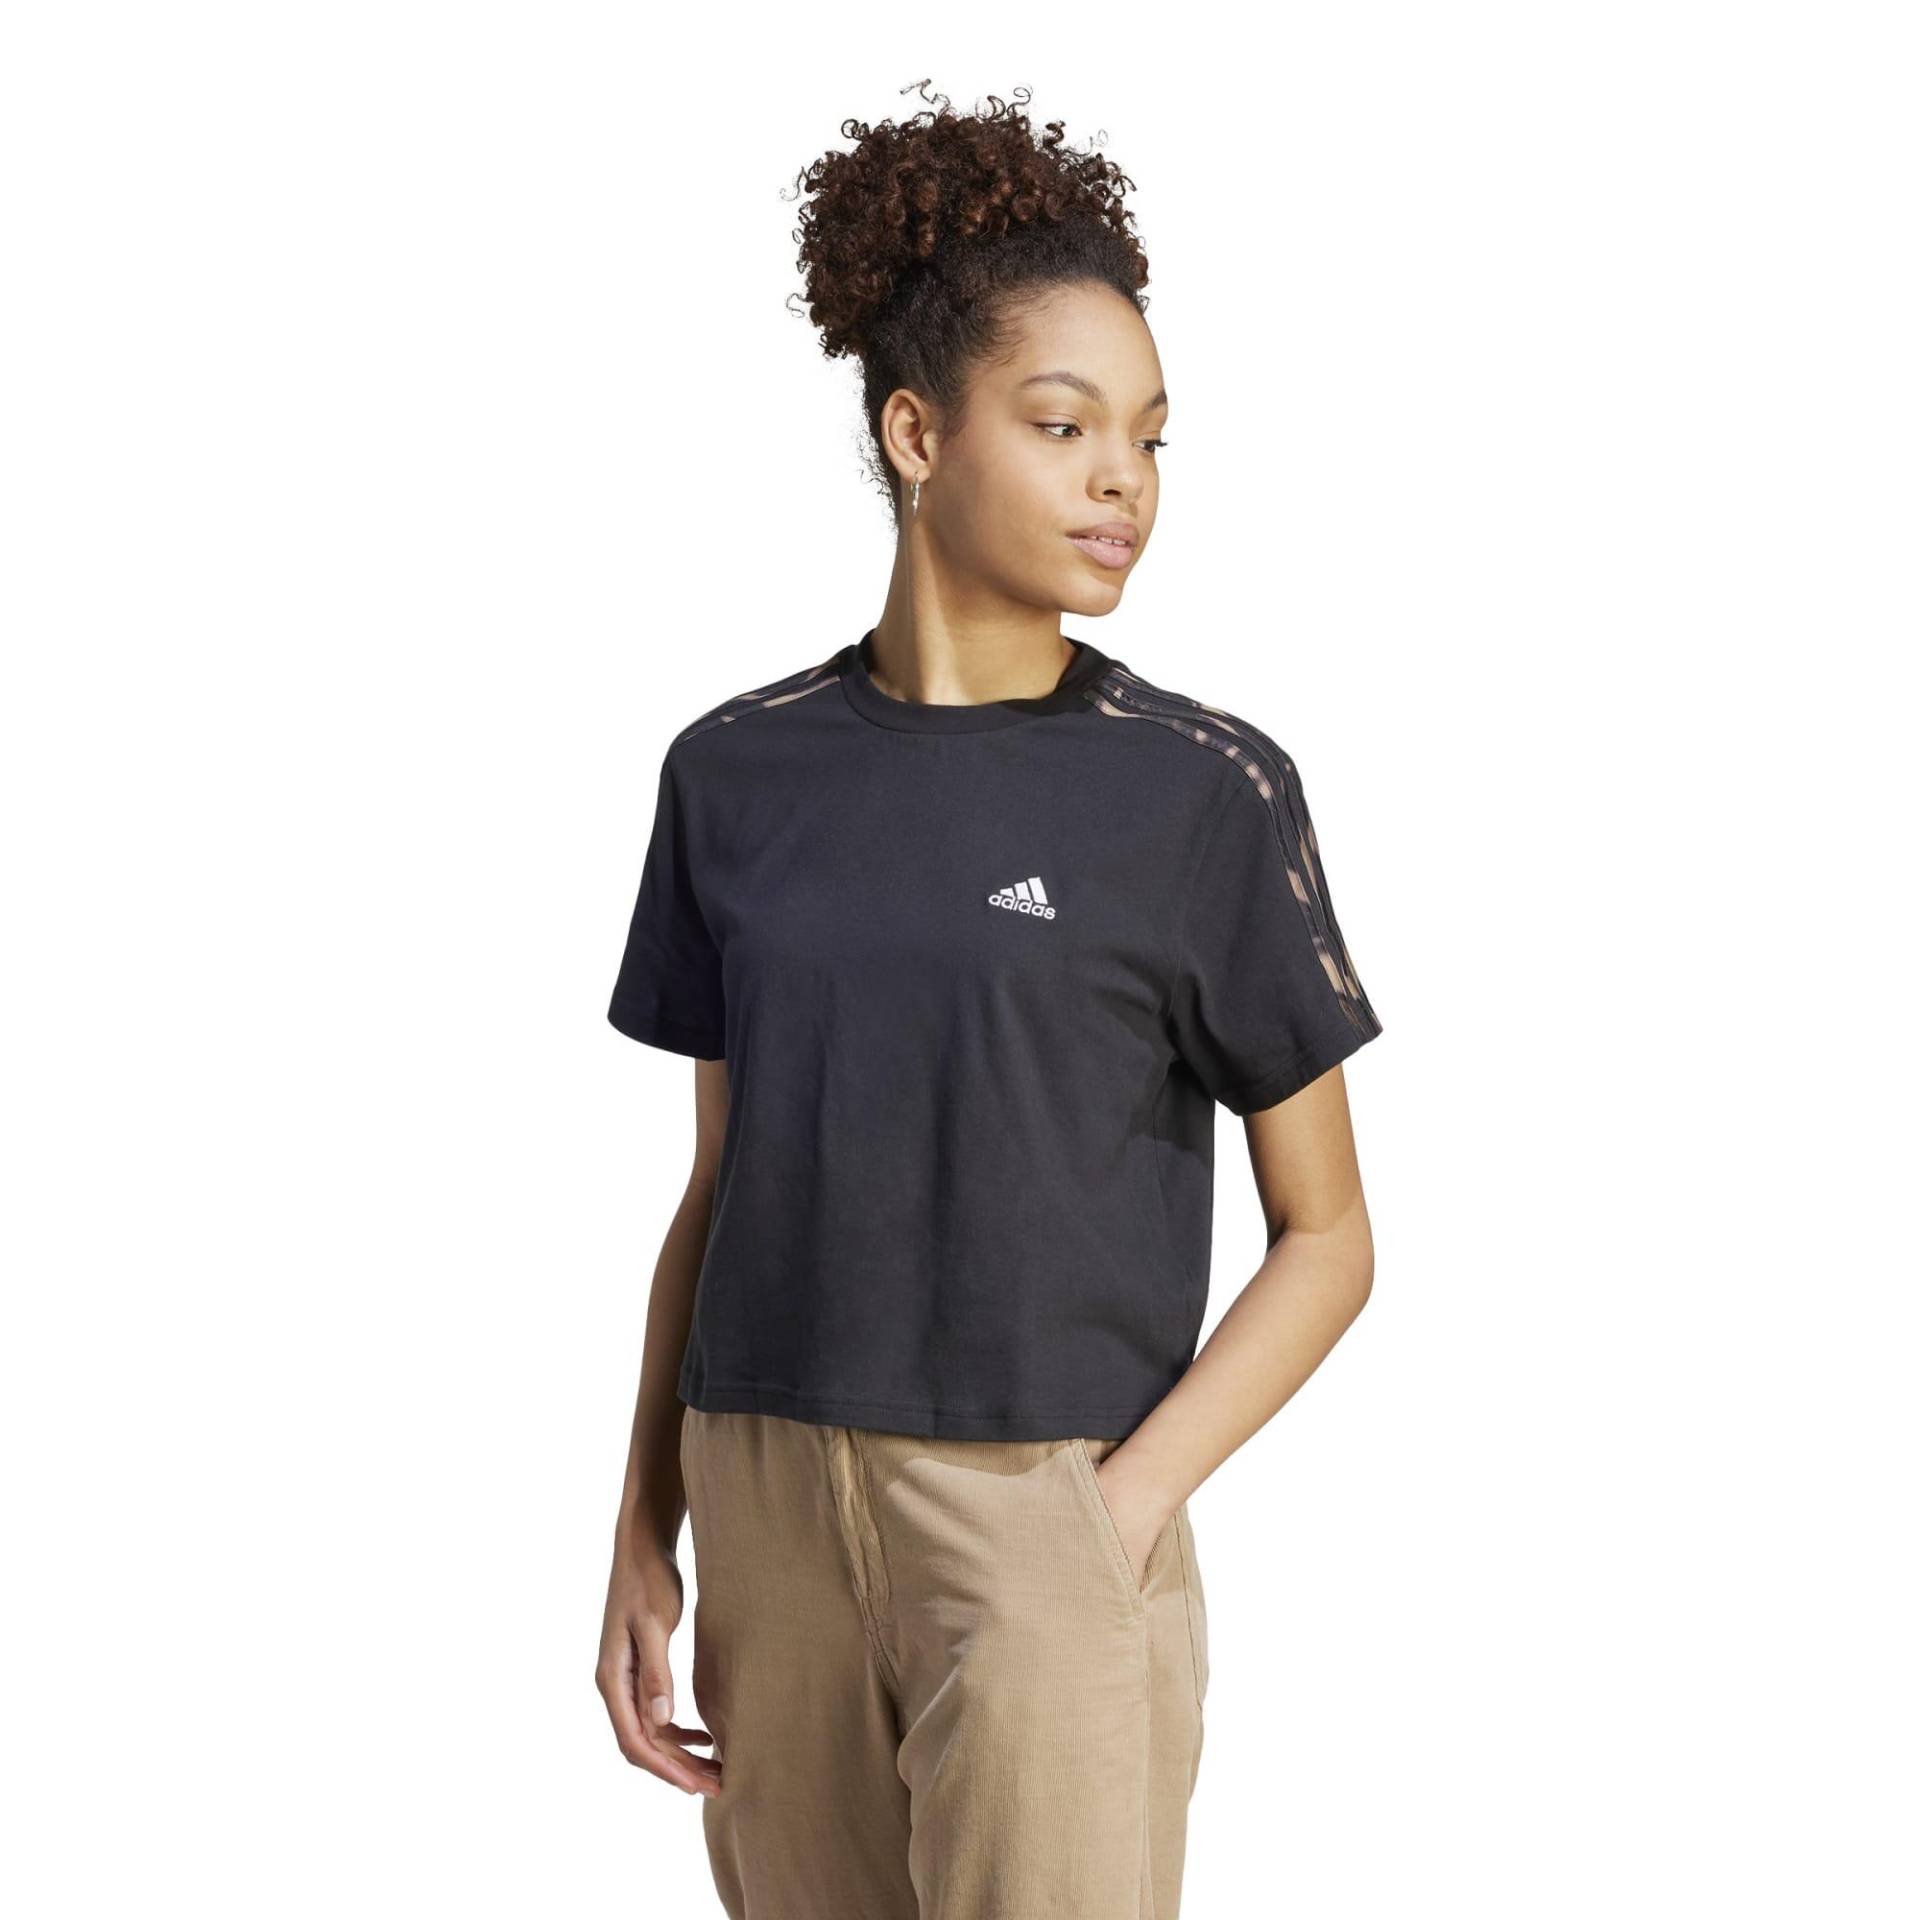 Adidas T-Shirt Damen - Vibaop schwarz von Adidas